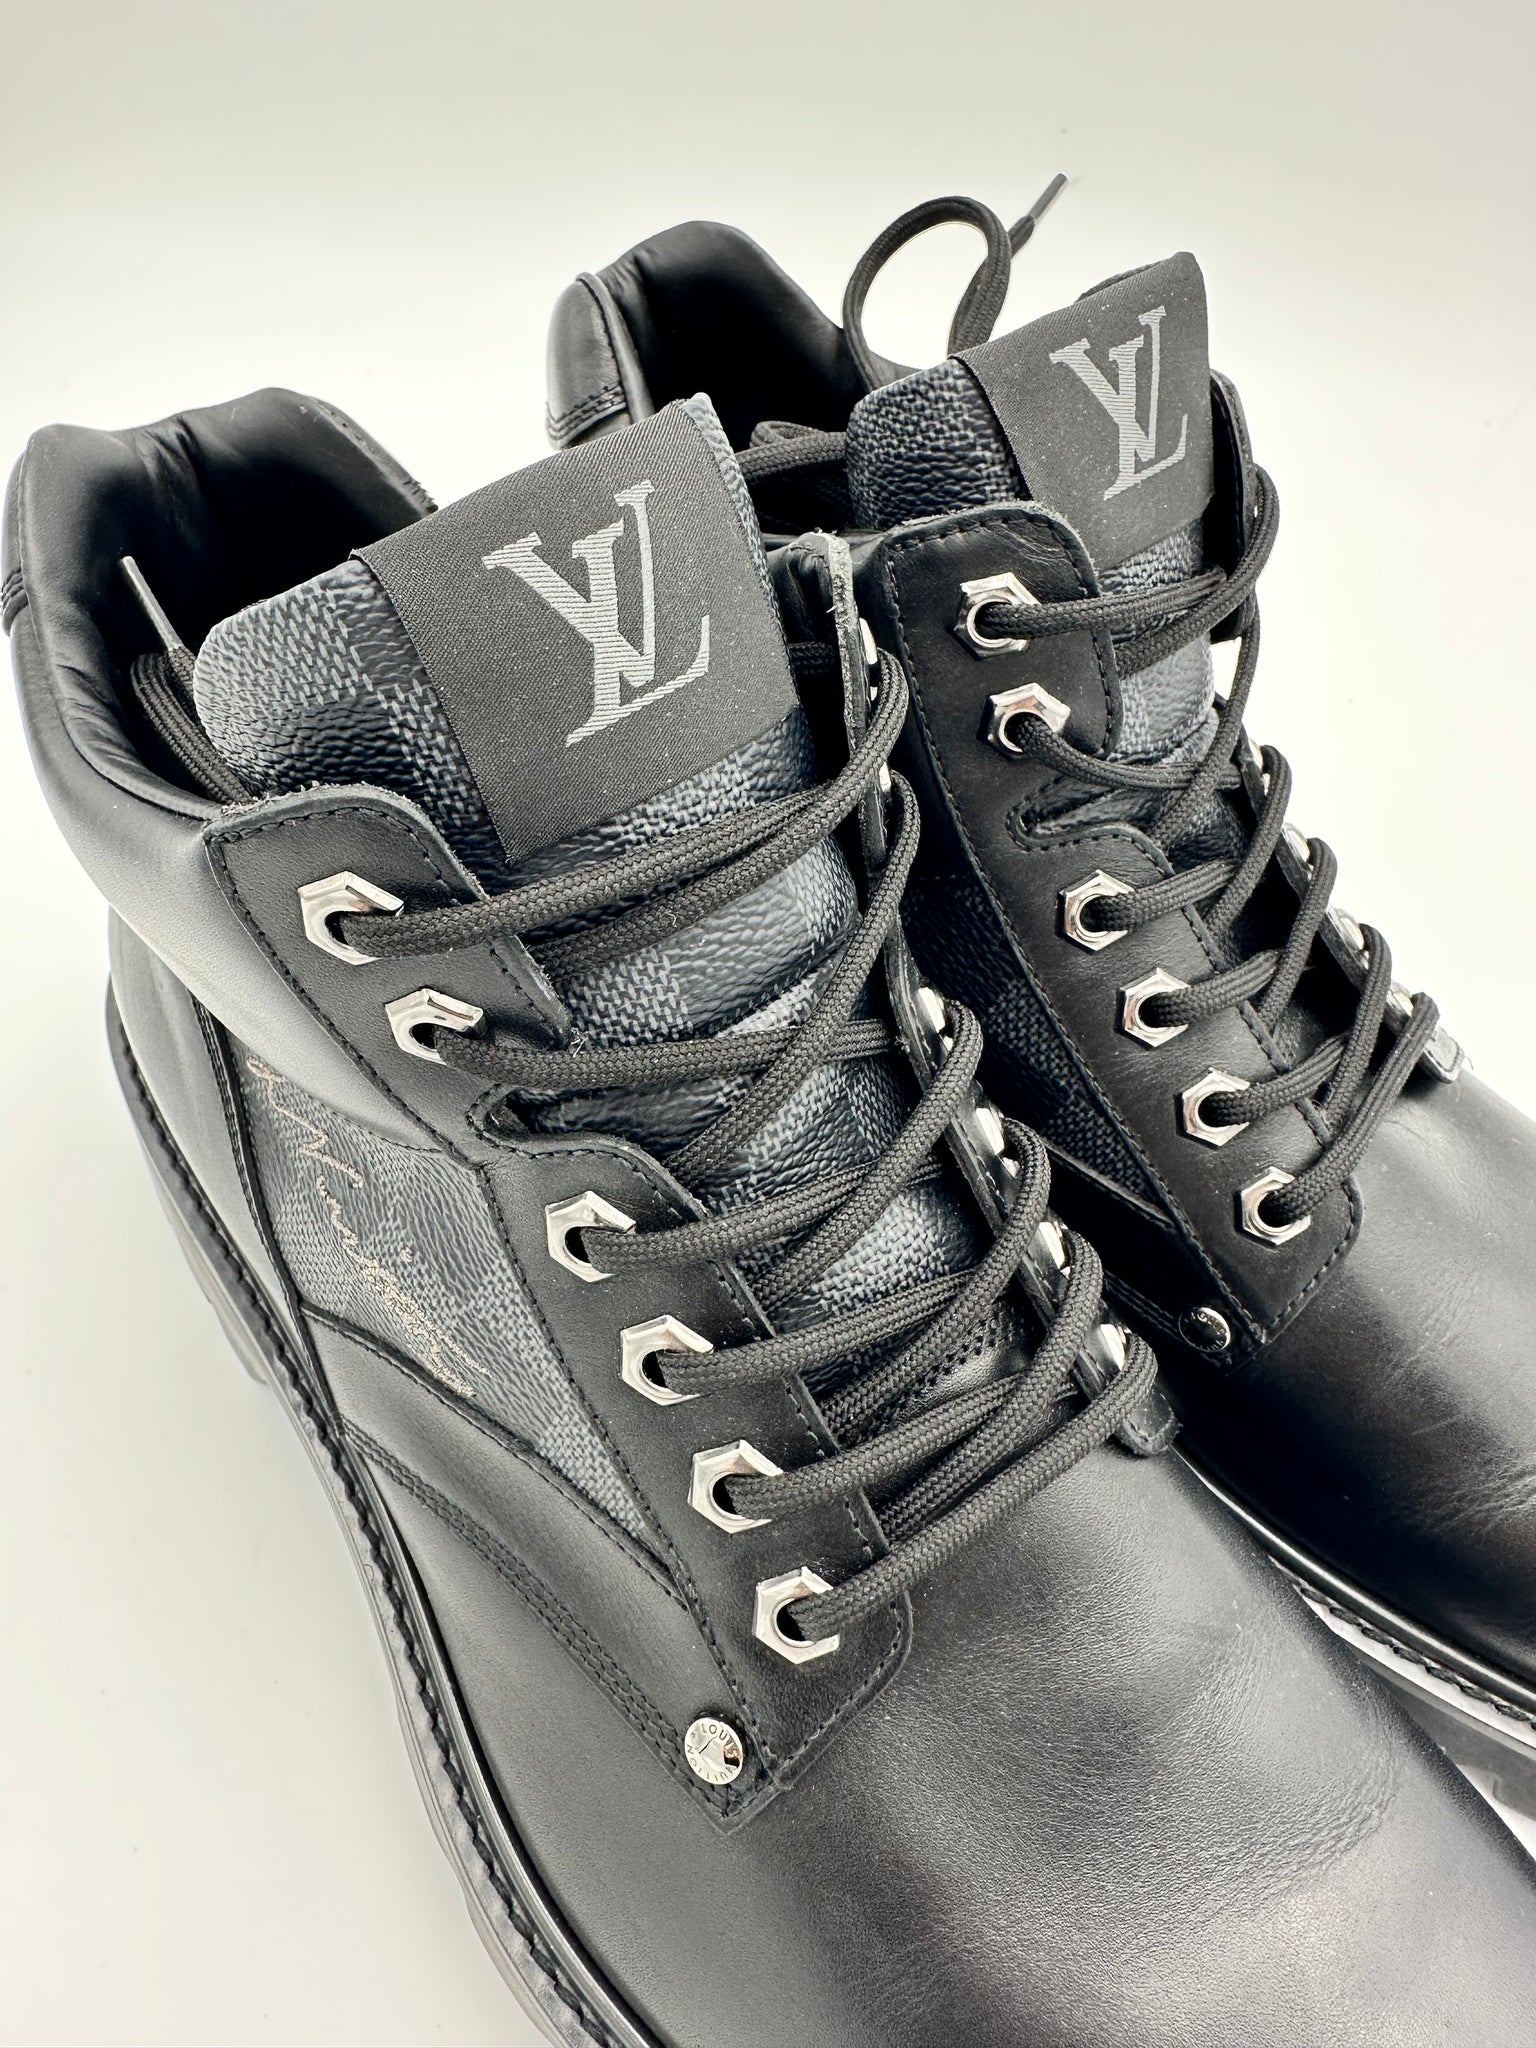 Louis Vuitton Boots for Men